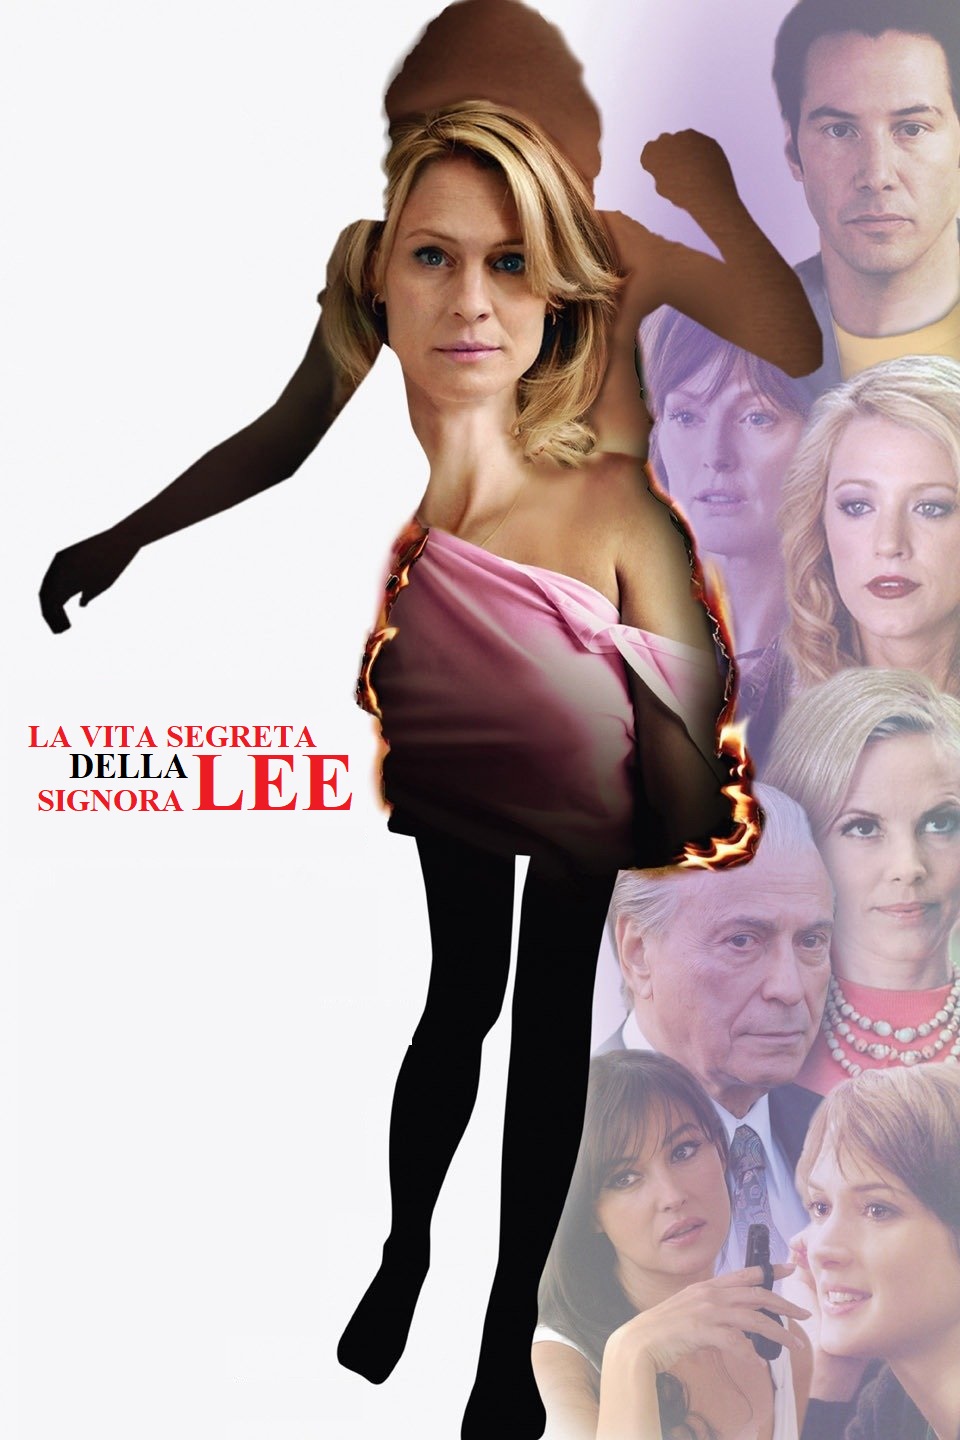 La vita segreta della signora Lee [HD] (2009)